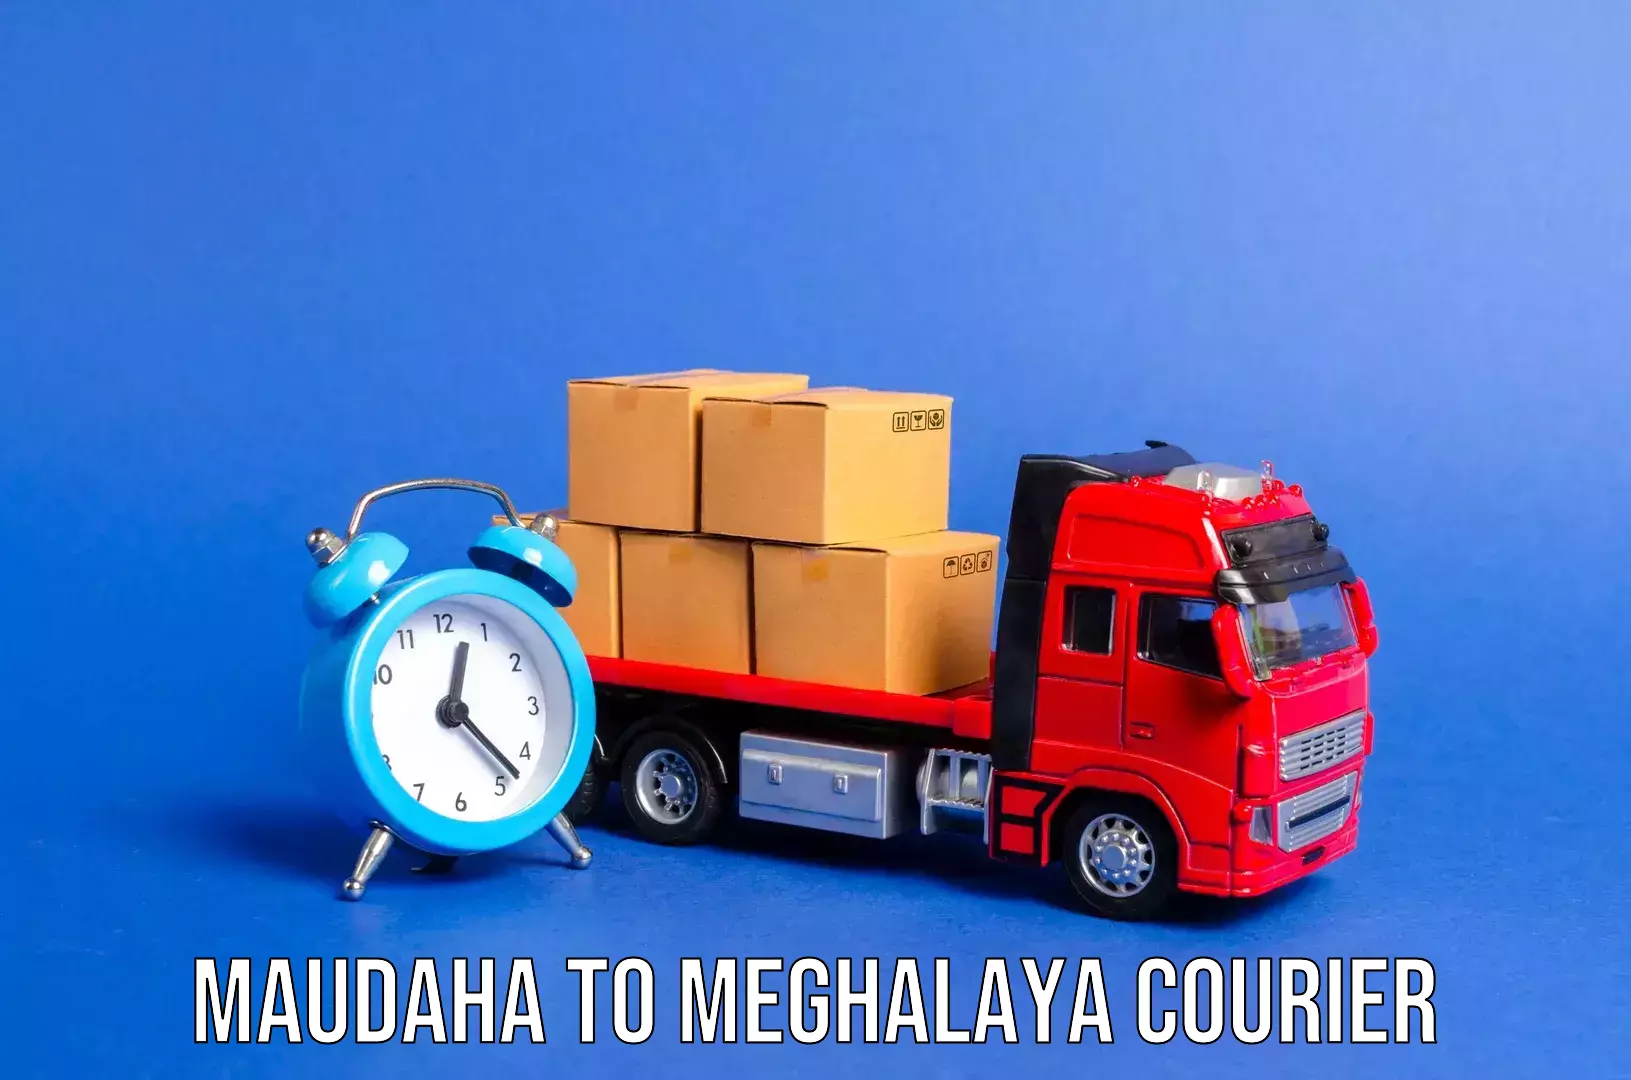 Hassle-free luggage shipping Maudaha to Shillong